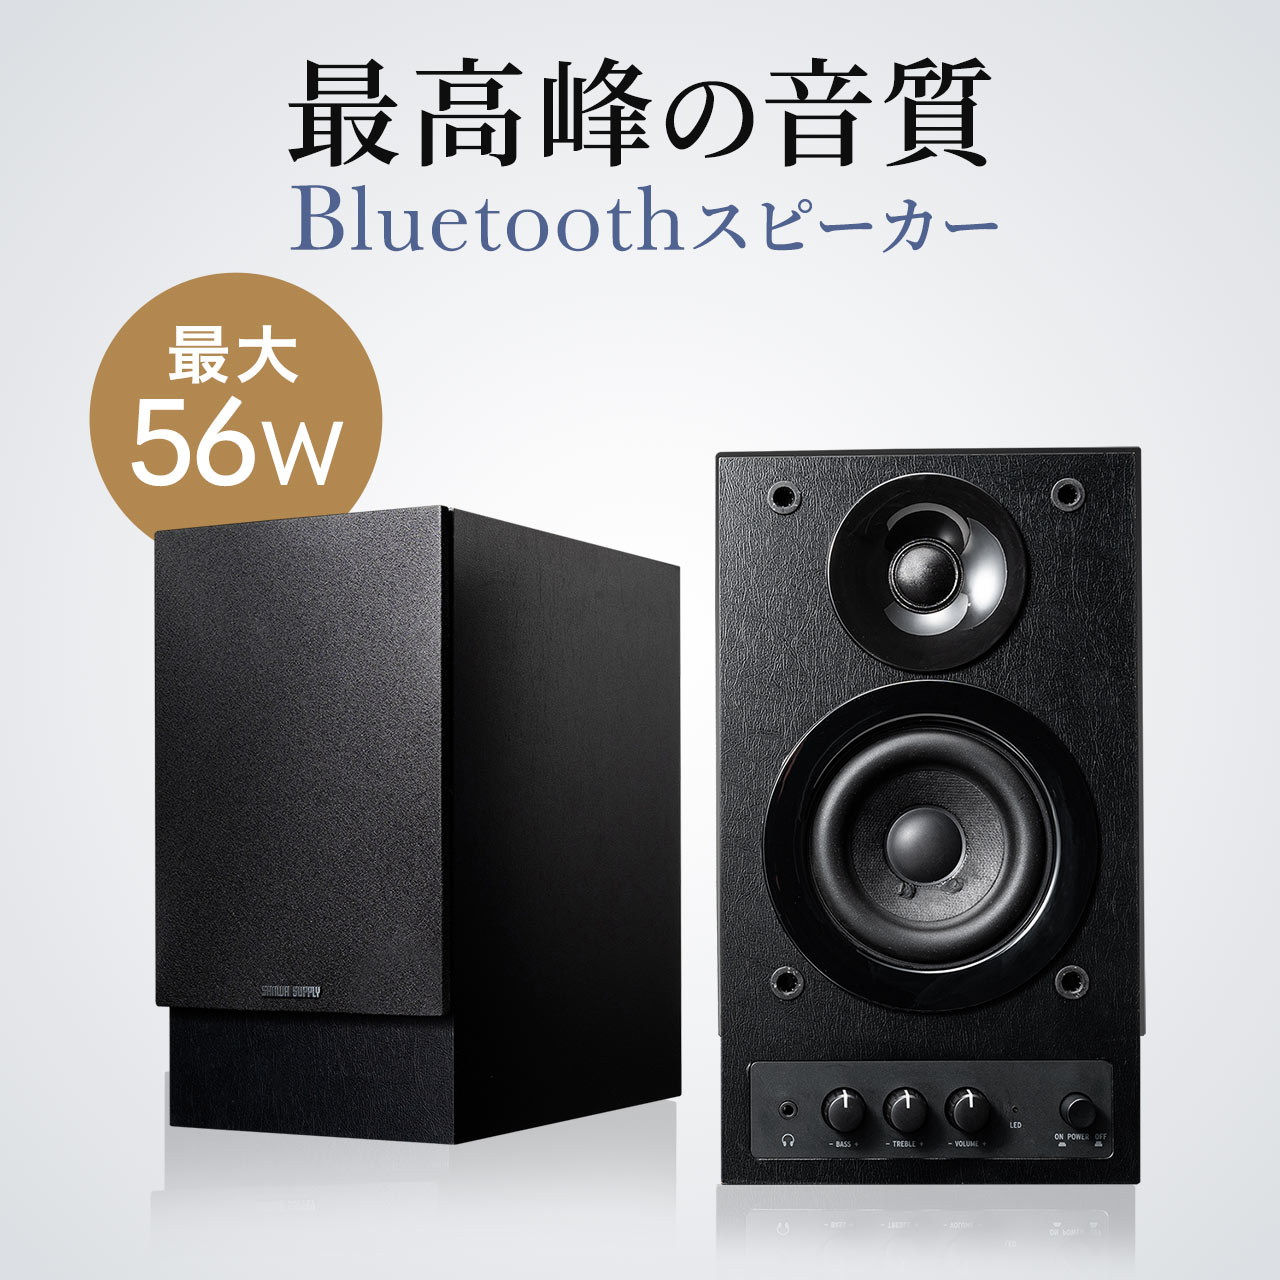 【火曜限定 クーポンで800円OFF】Bluetooth ス